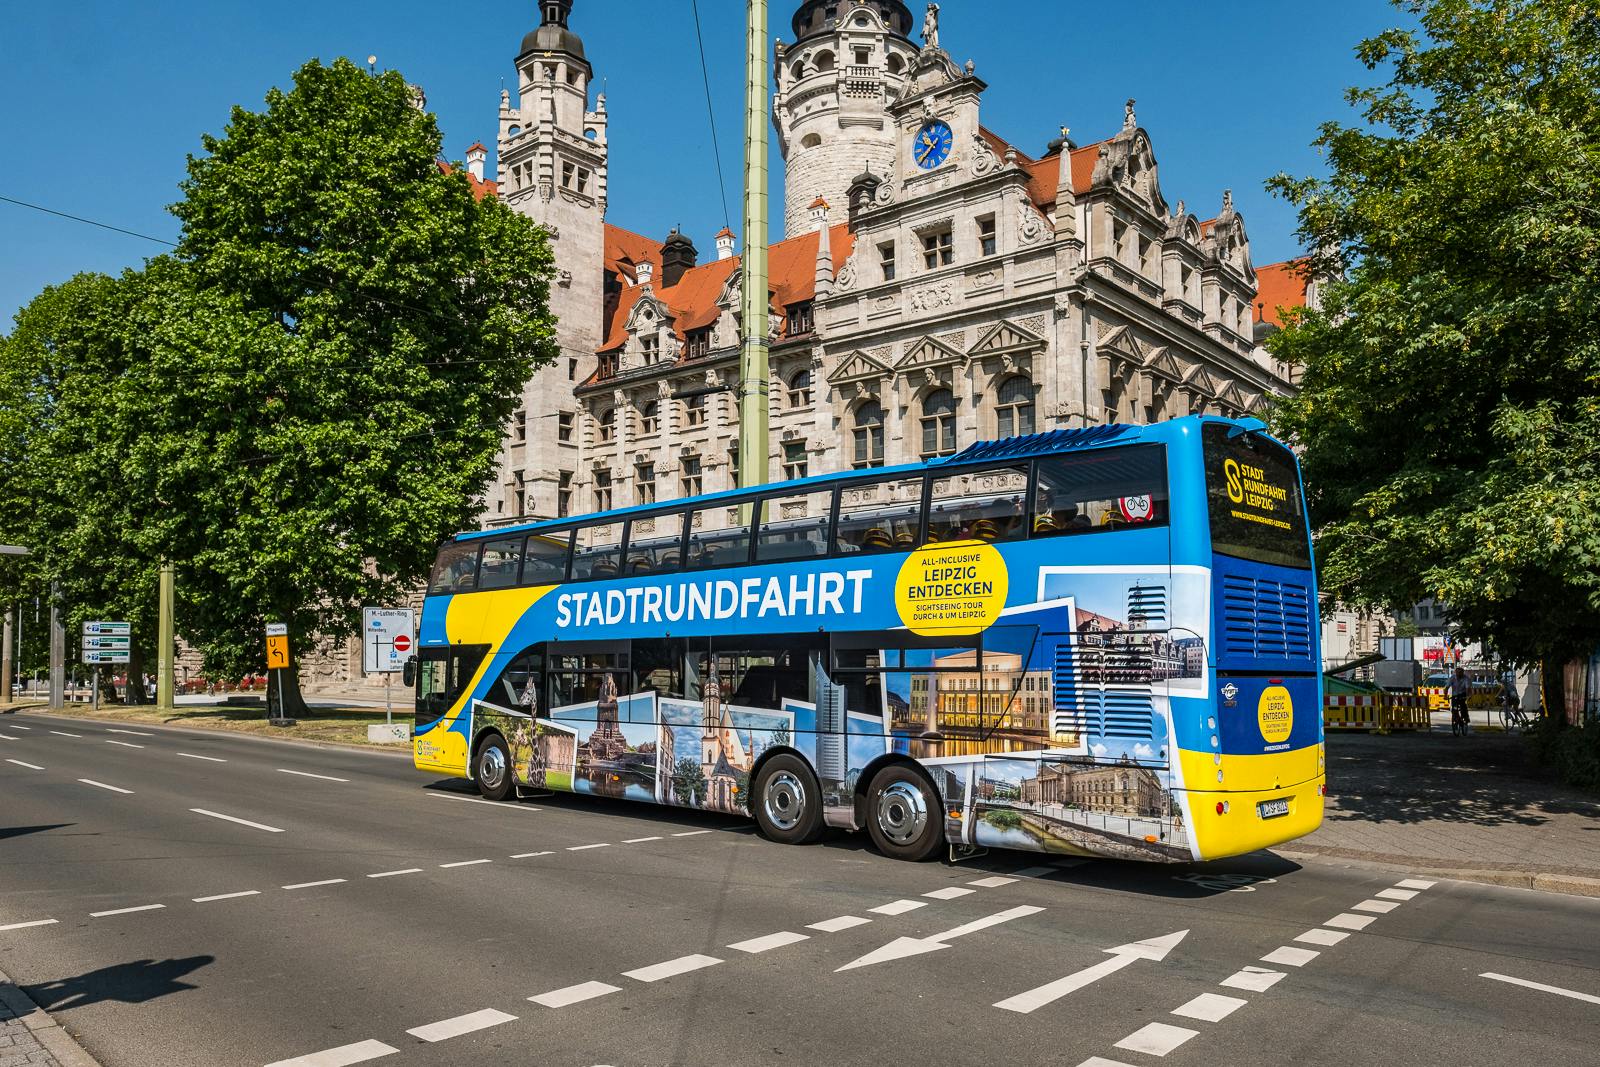 Grote stadstour in Leipzig met de hop on, hop off-bus